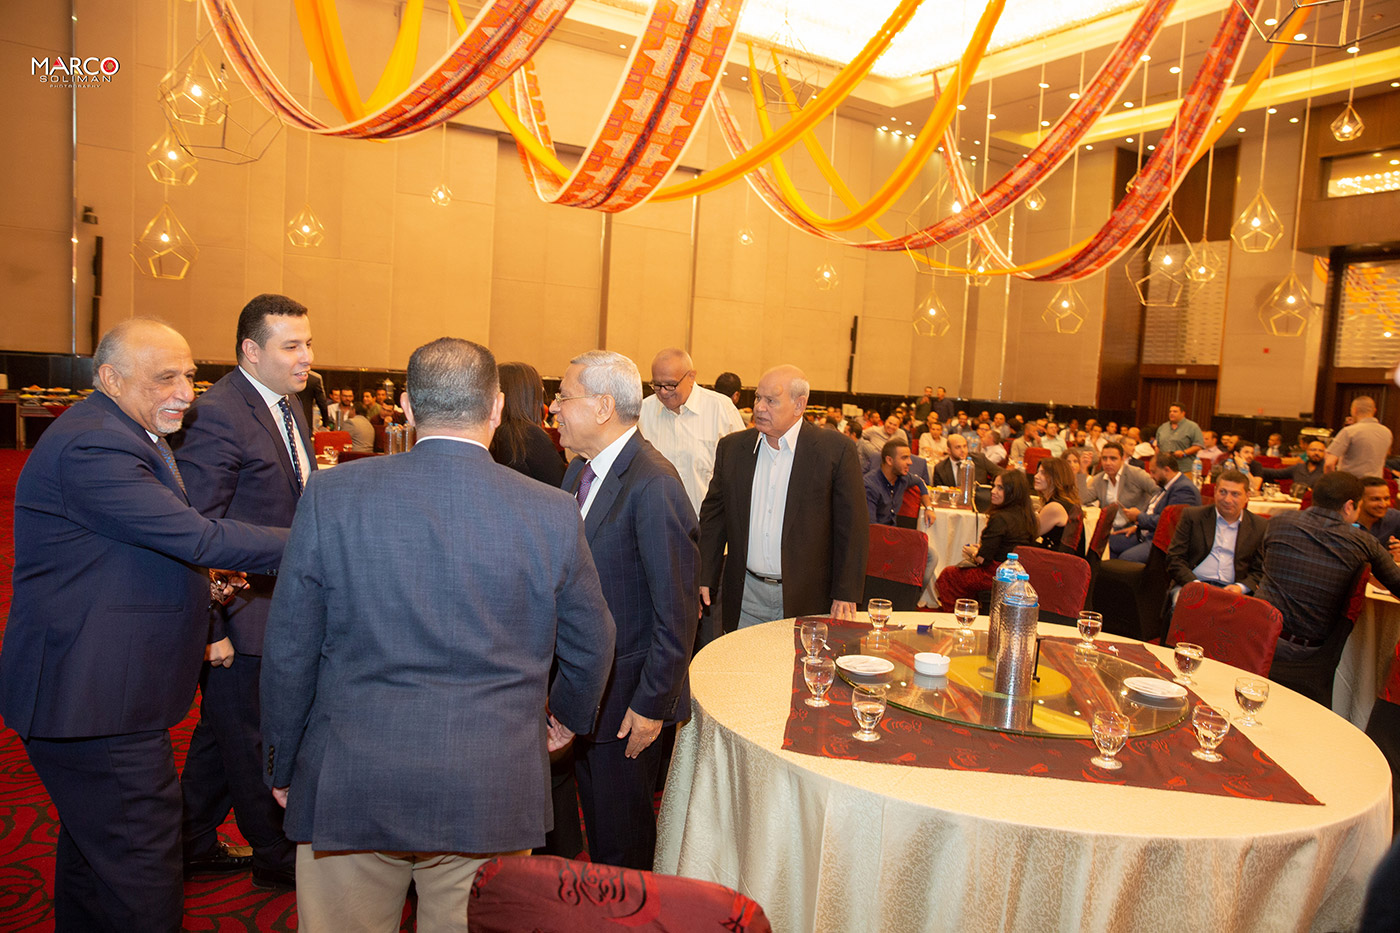 ASGC Egypt Iftar 2019